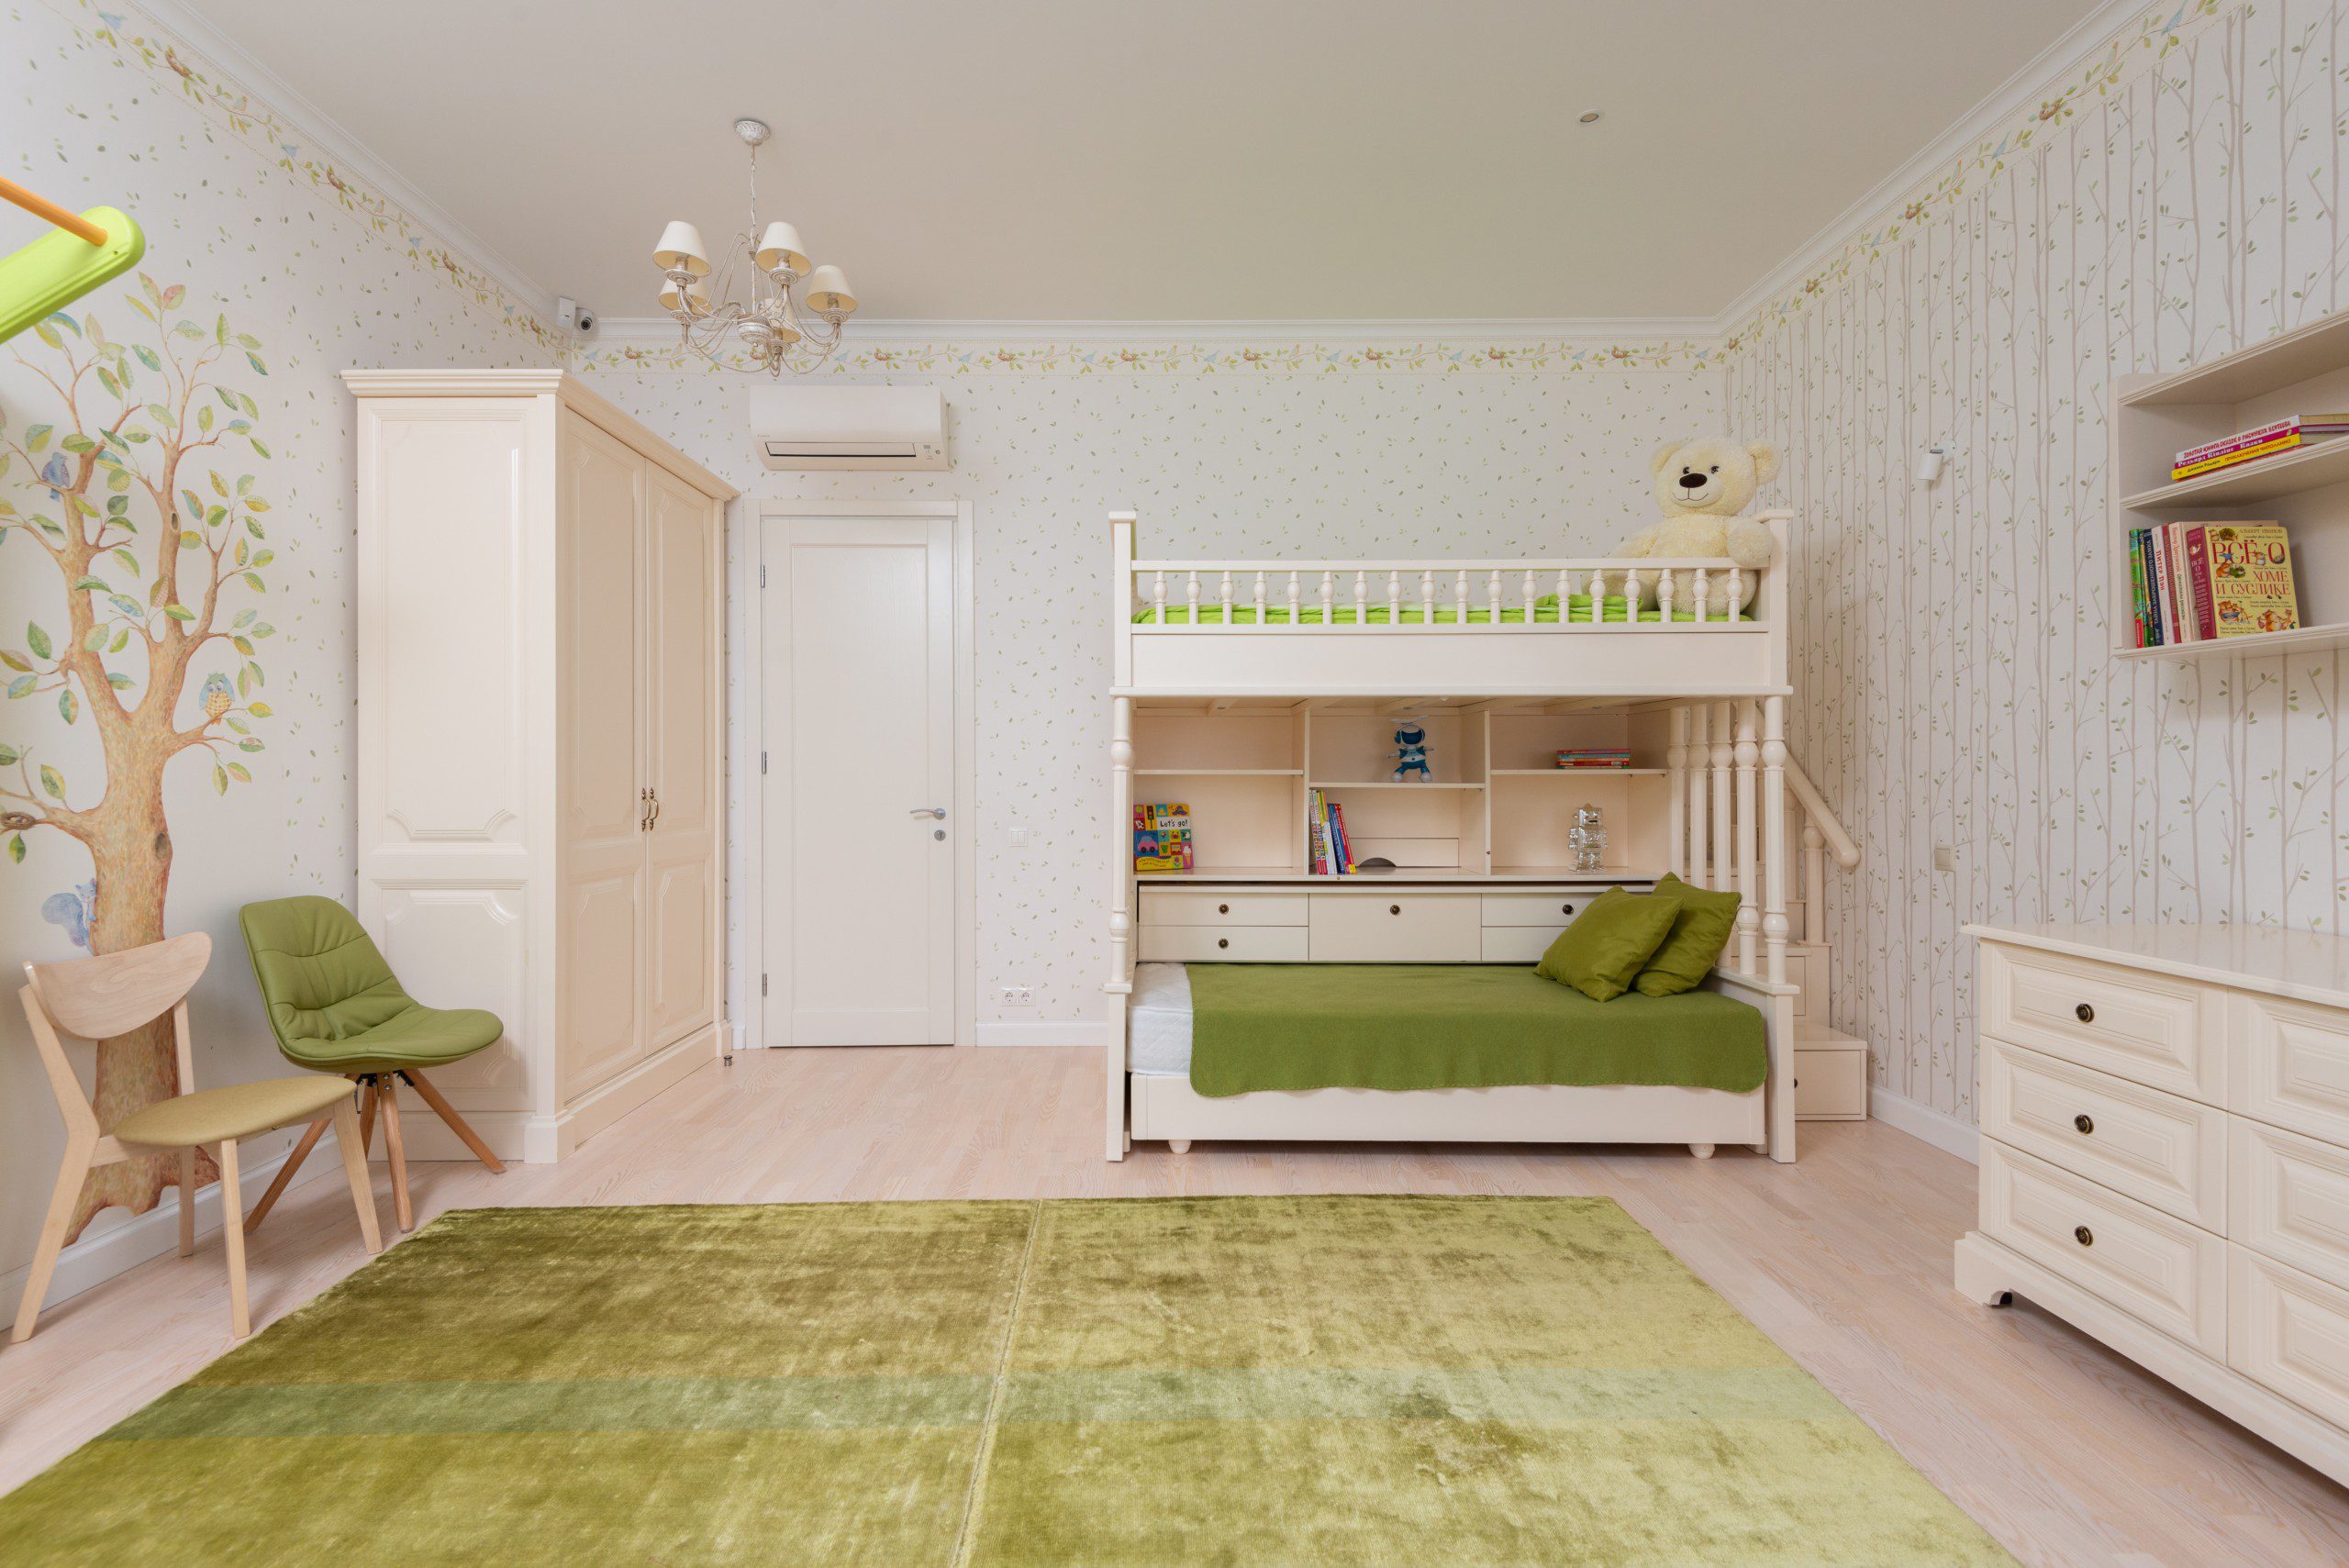 Decoração de quarto infantil em tons de bege e verde com tapete decorativo e papel de parede com árvore e folhas.